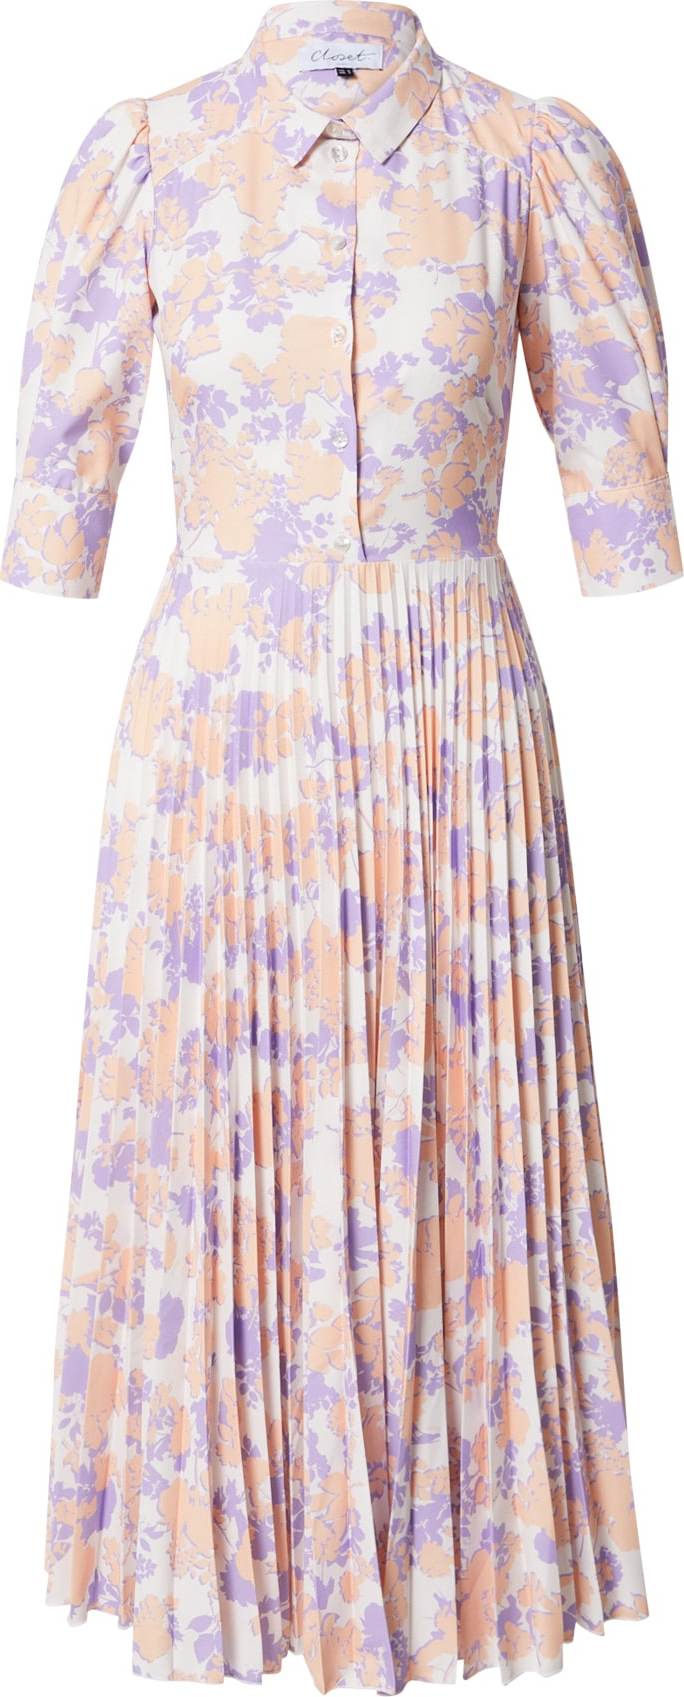 Closet London Košilové šaty pastelová fialová / pastelově oranžová / přírodní bílá